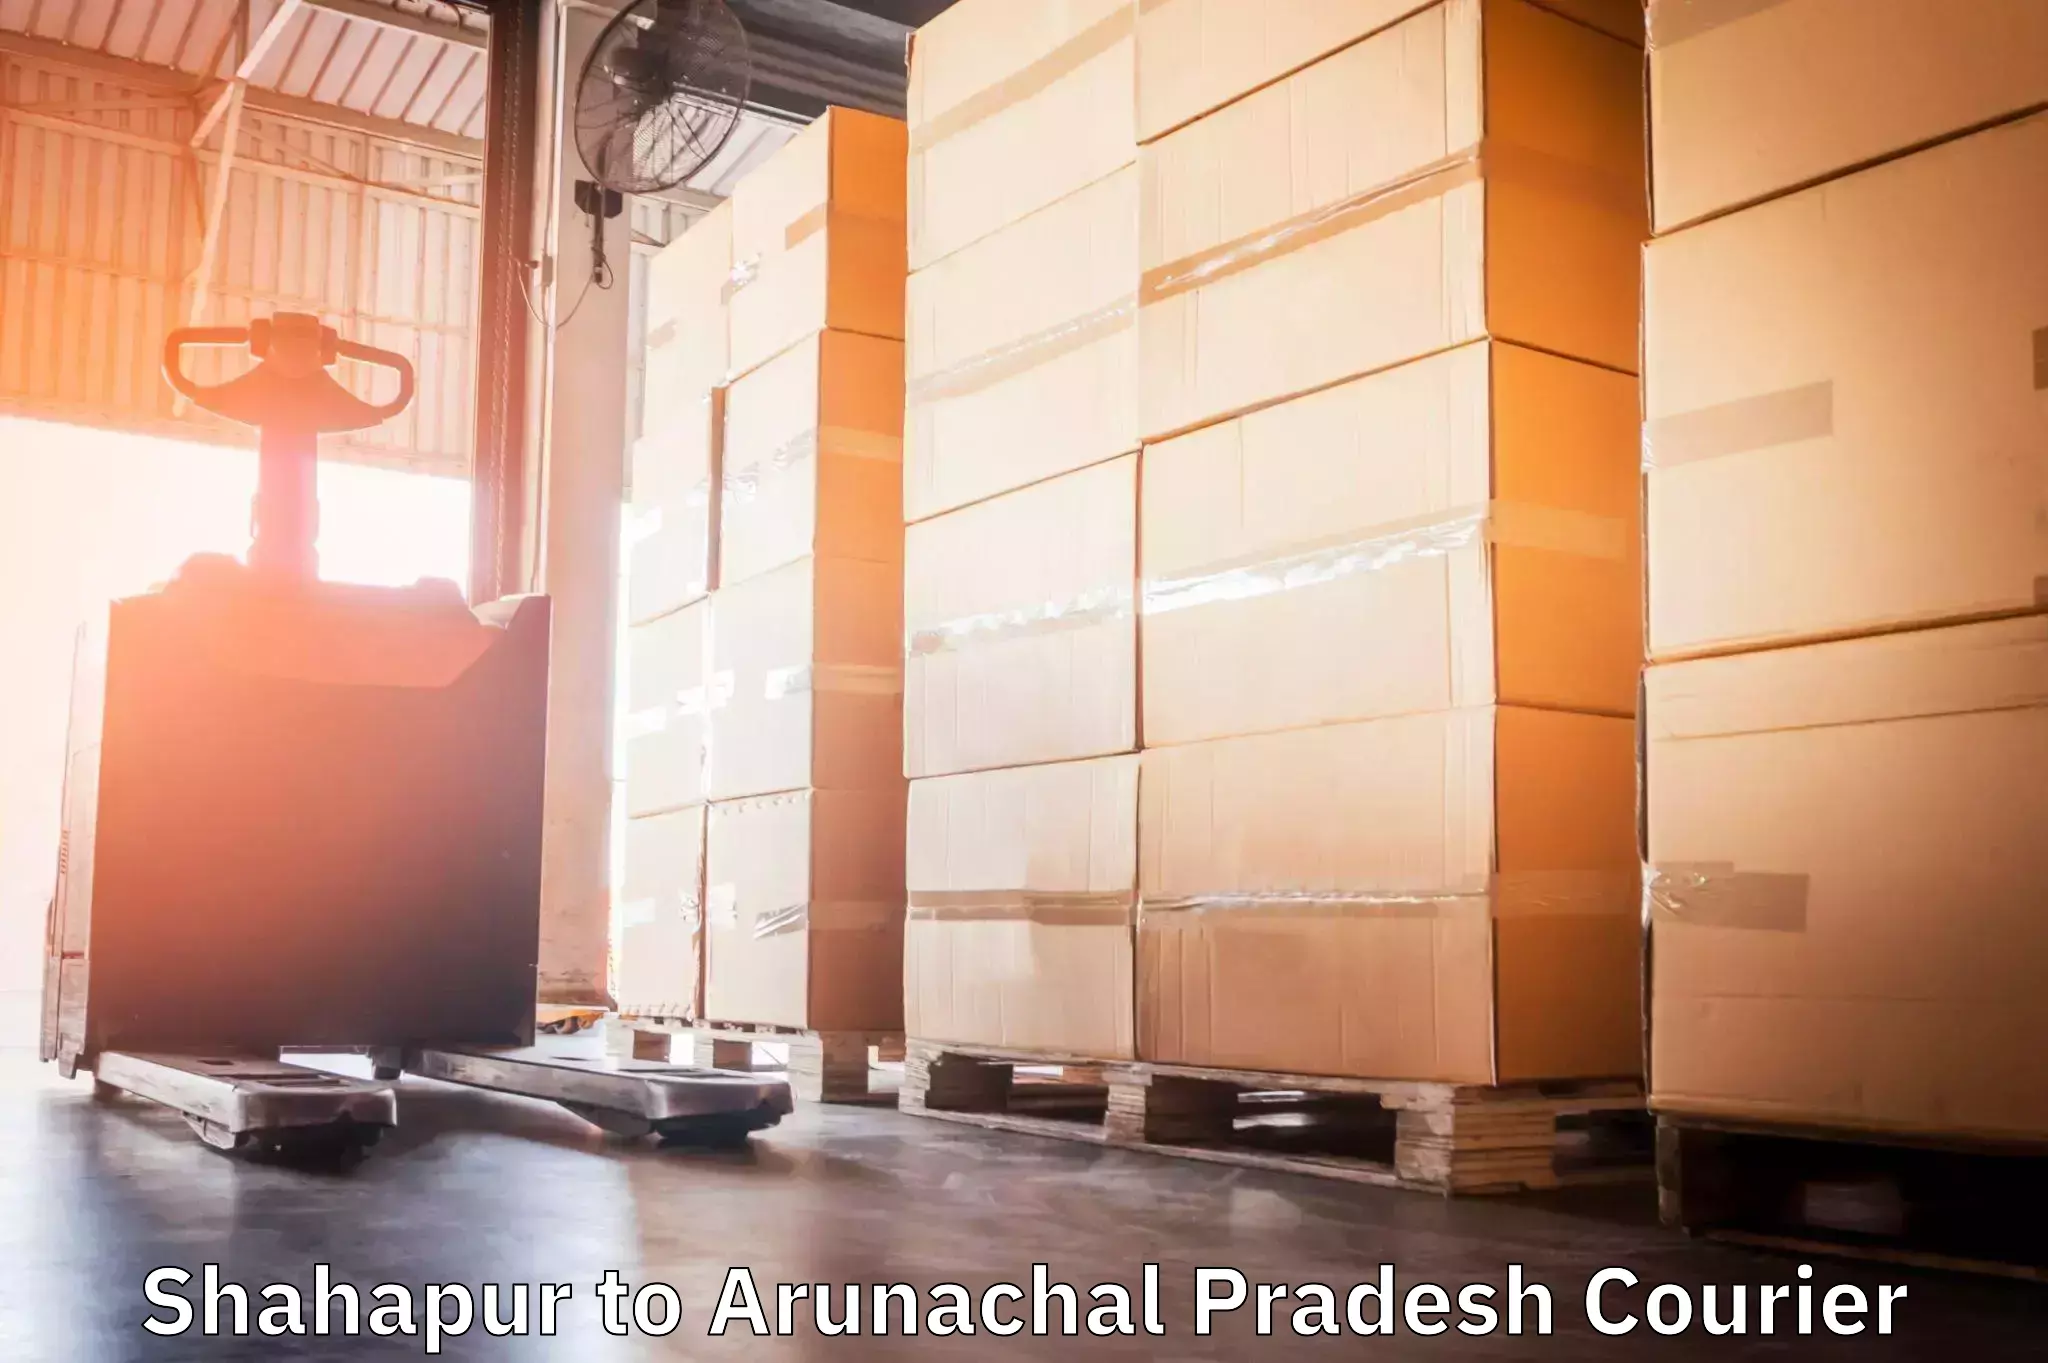 Efficient parcel service Shahapur to Lower Subansiri